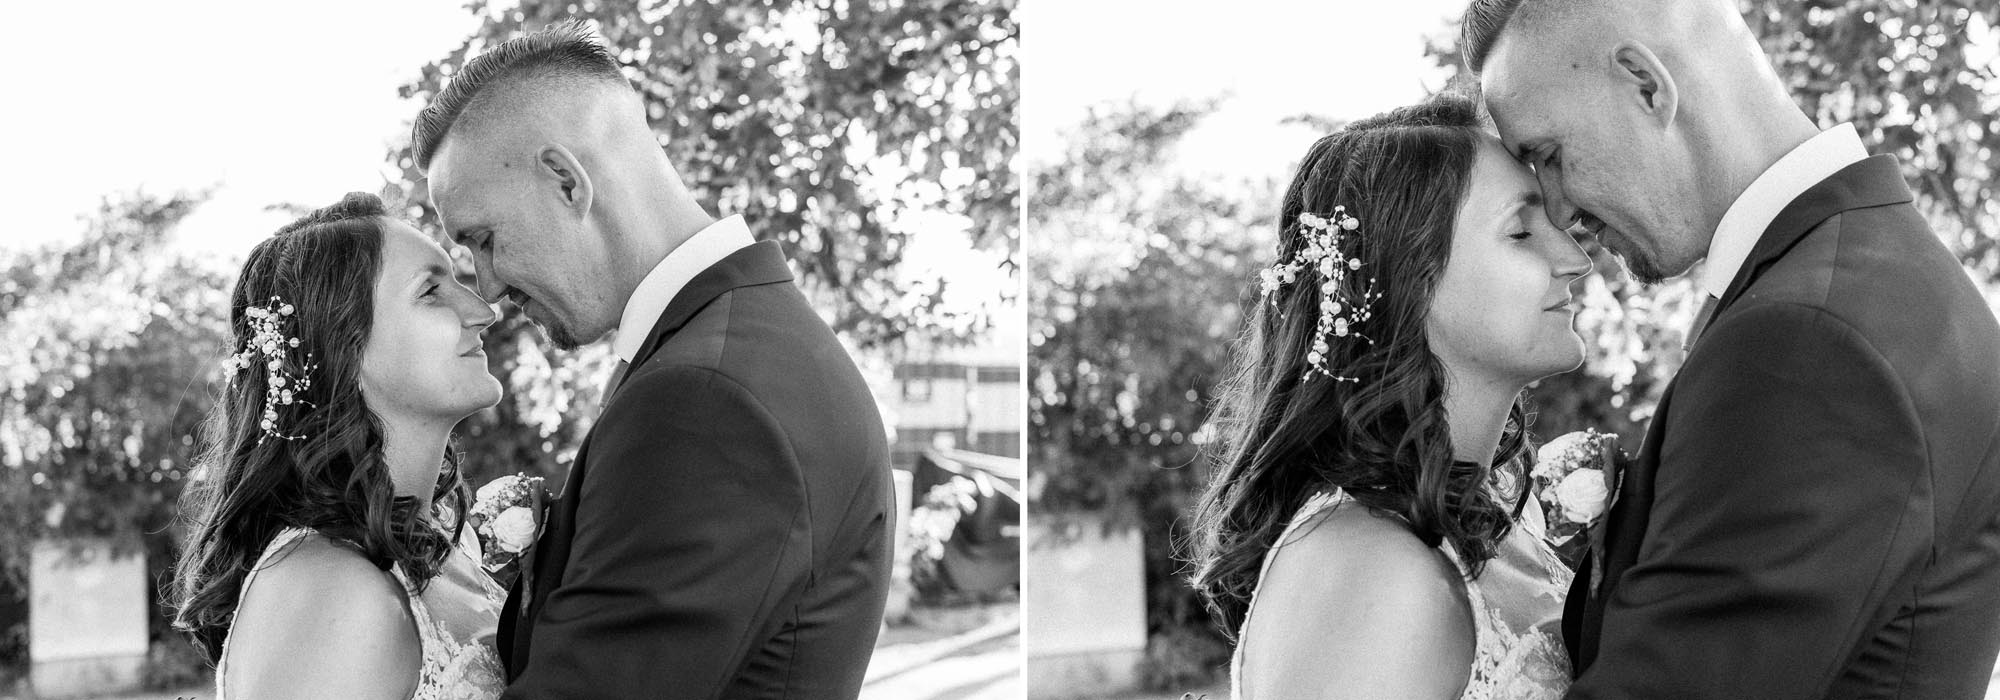 Hochzeitsfotos_Hochzeitsreportage in Wien_Brautpaarshooting_Collage vom Brautpaar ganz nah beieinander